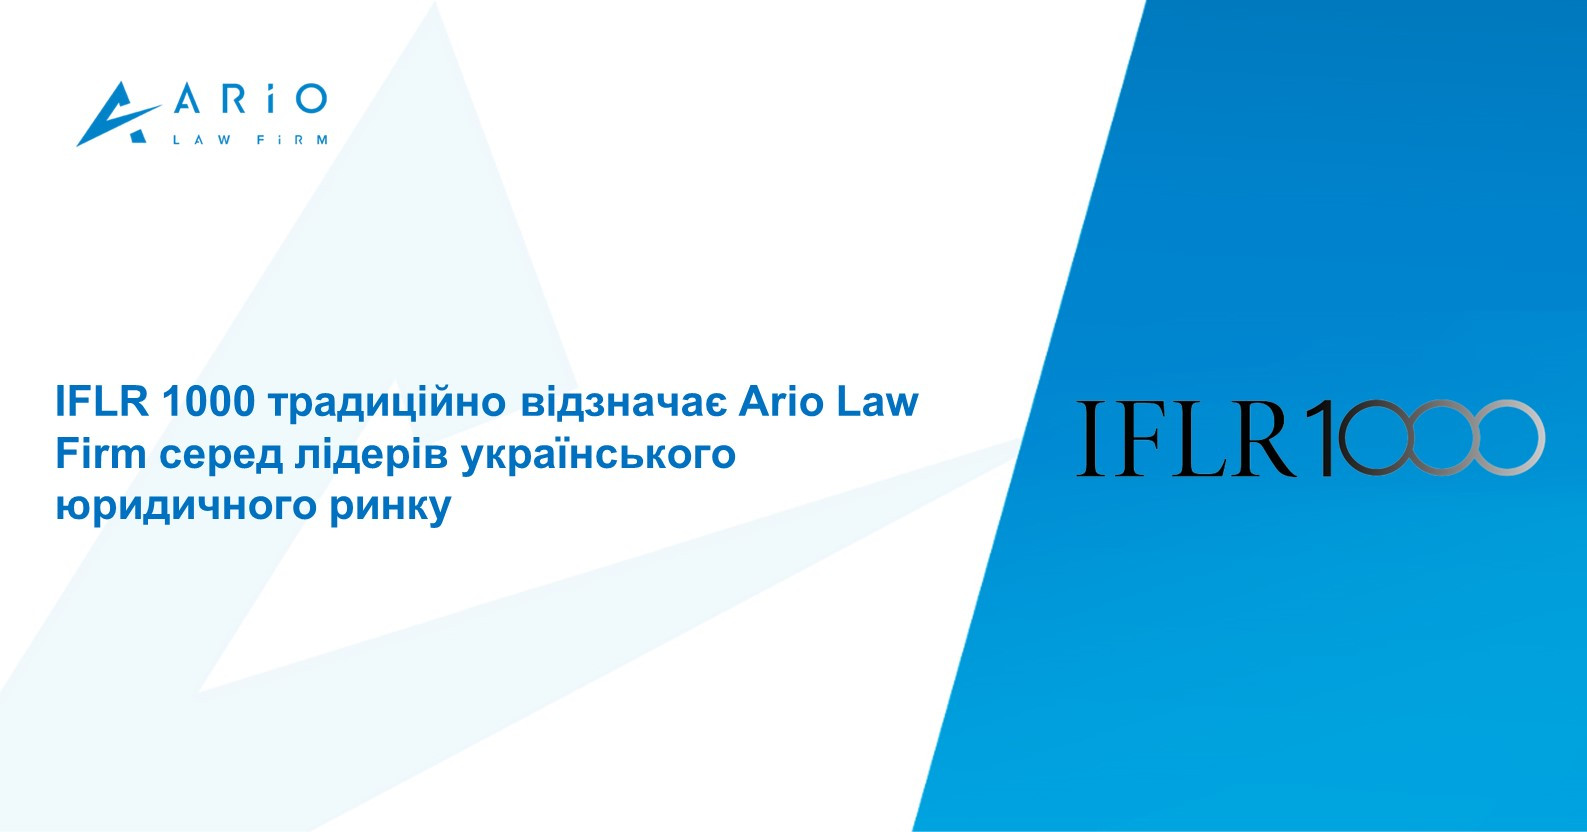 IFLR 1000 традиційно відзначає Ario Law Firm серед лідерів українського юридичного ринку